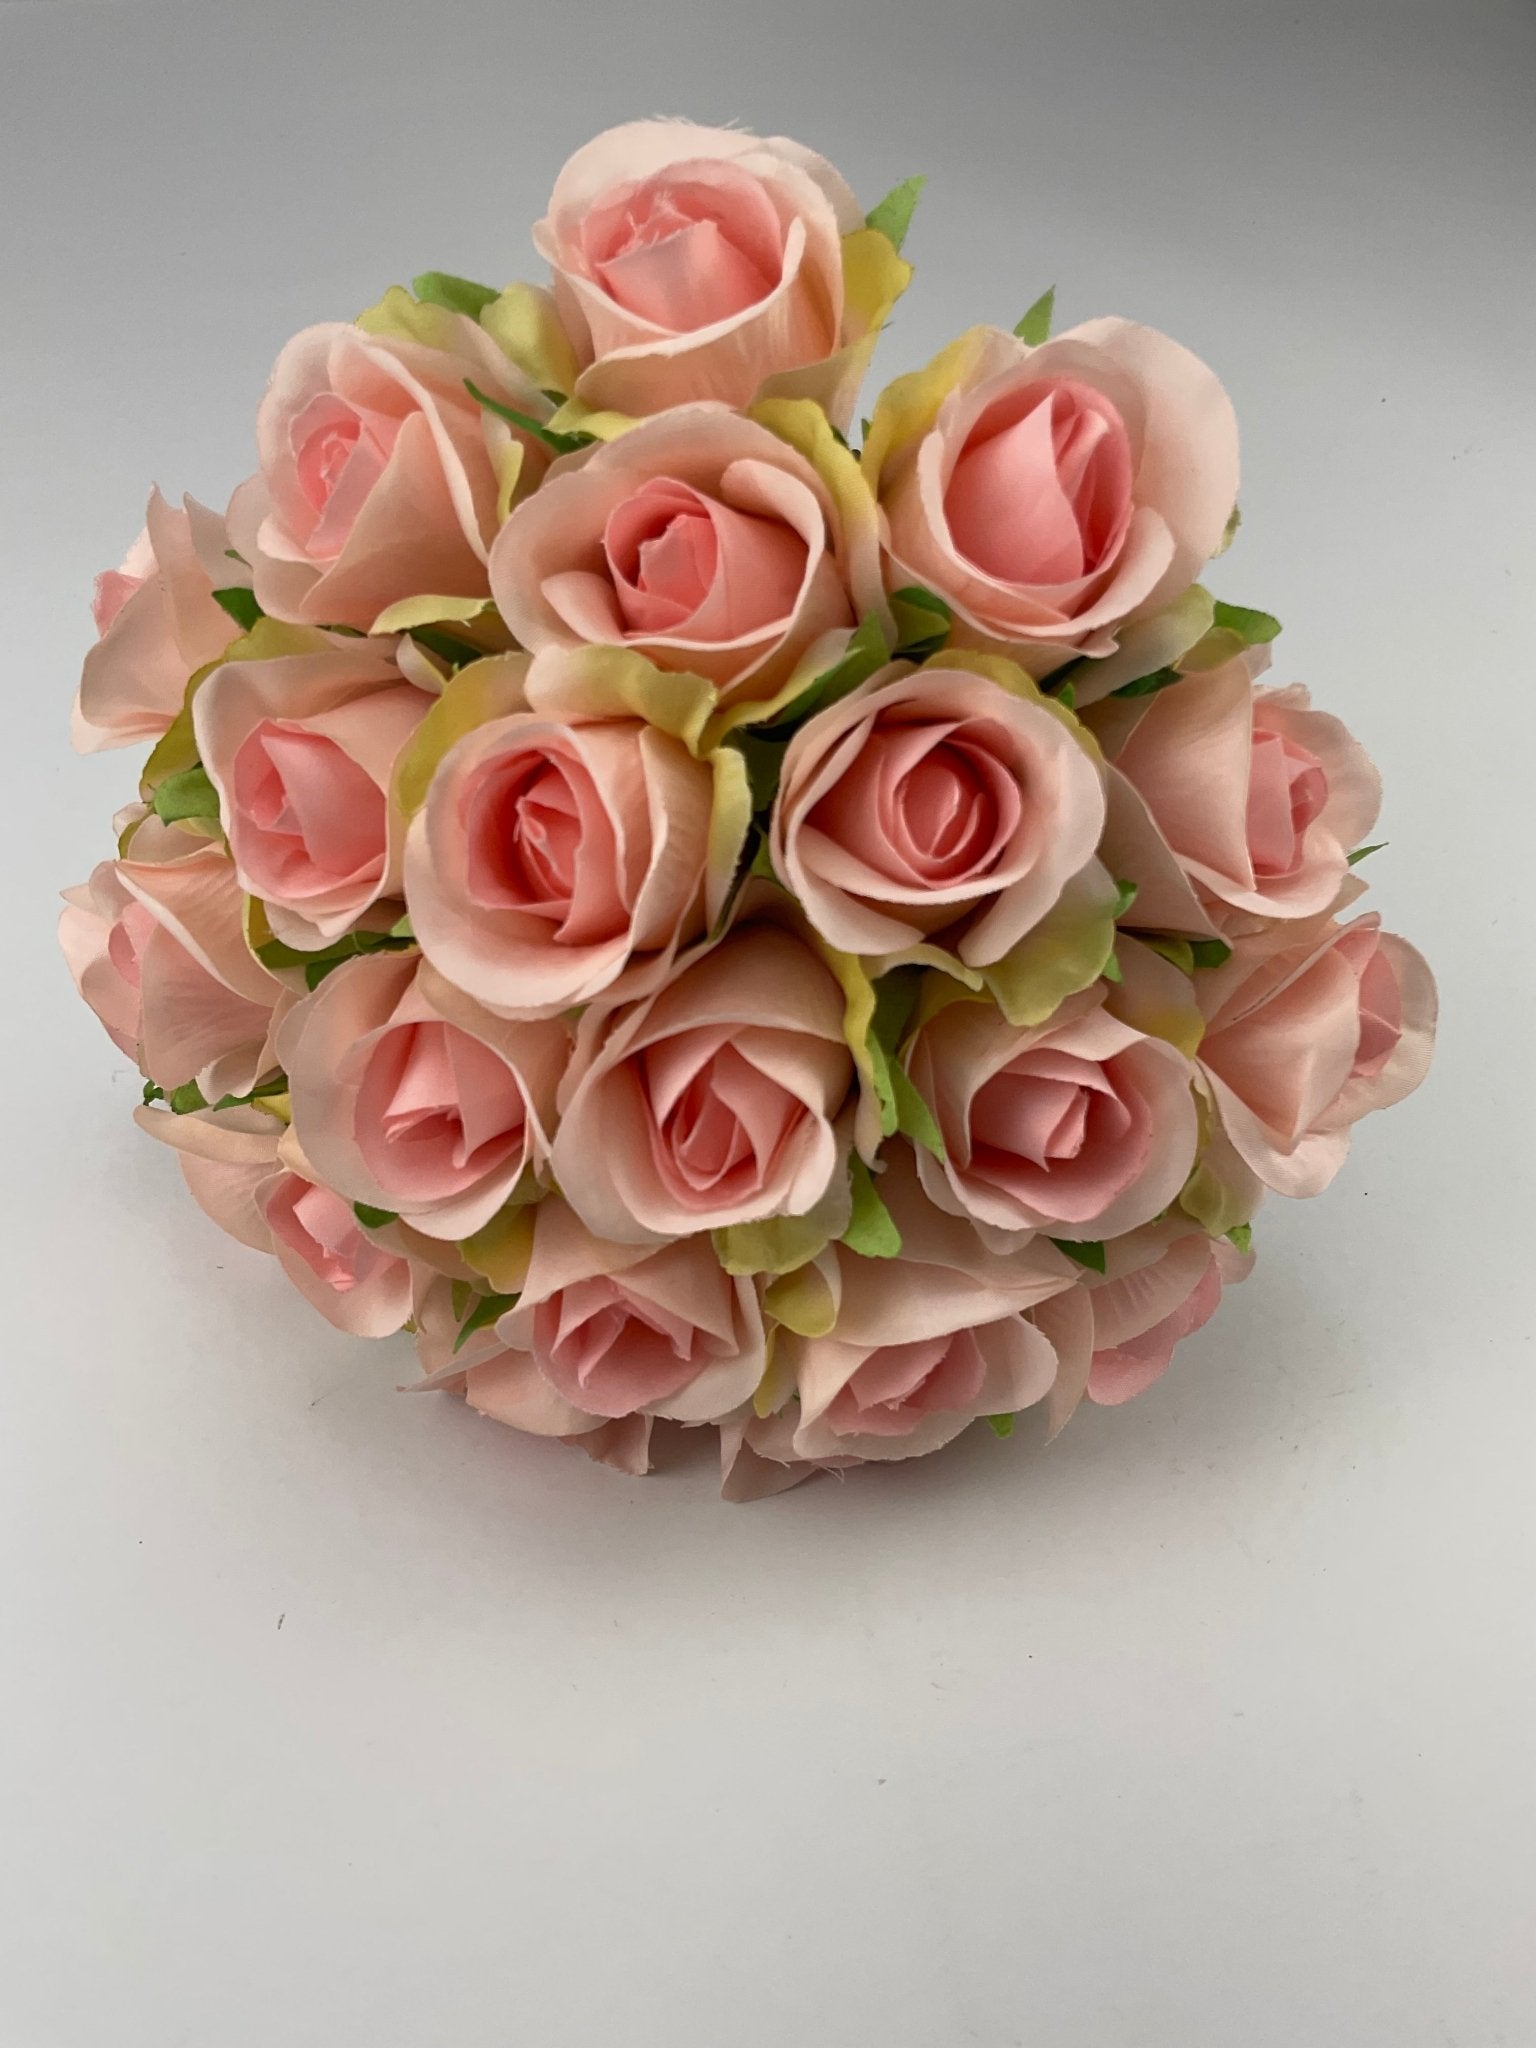 Rose bundle - pink - Greenery MarketArtificial Flora25837